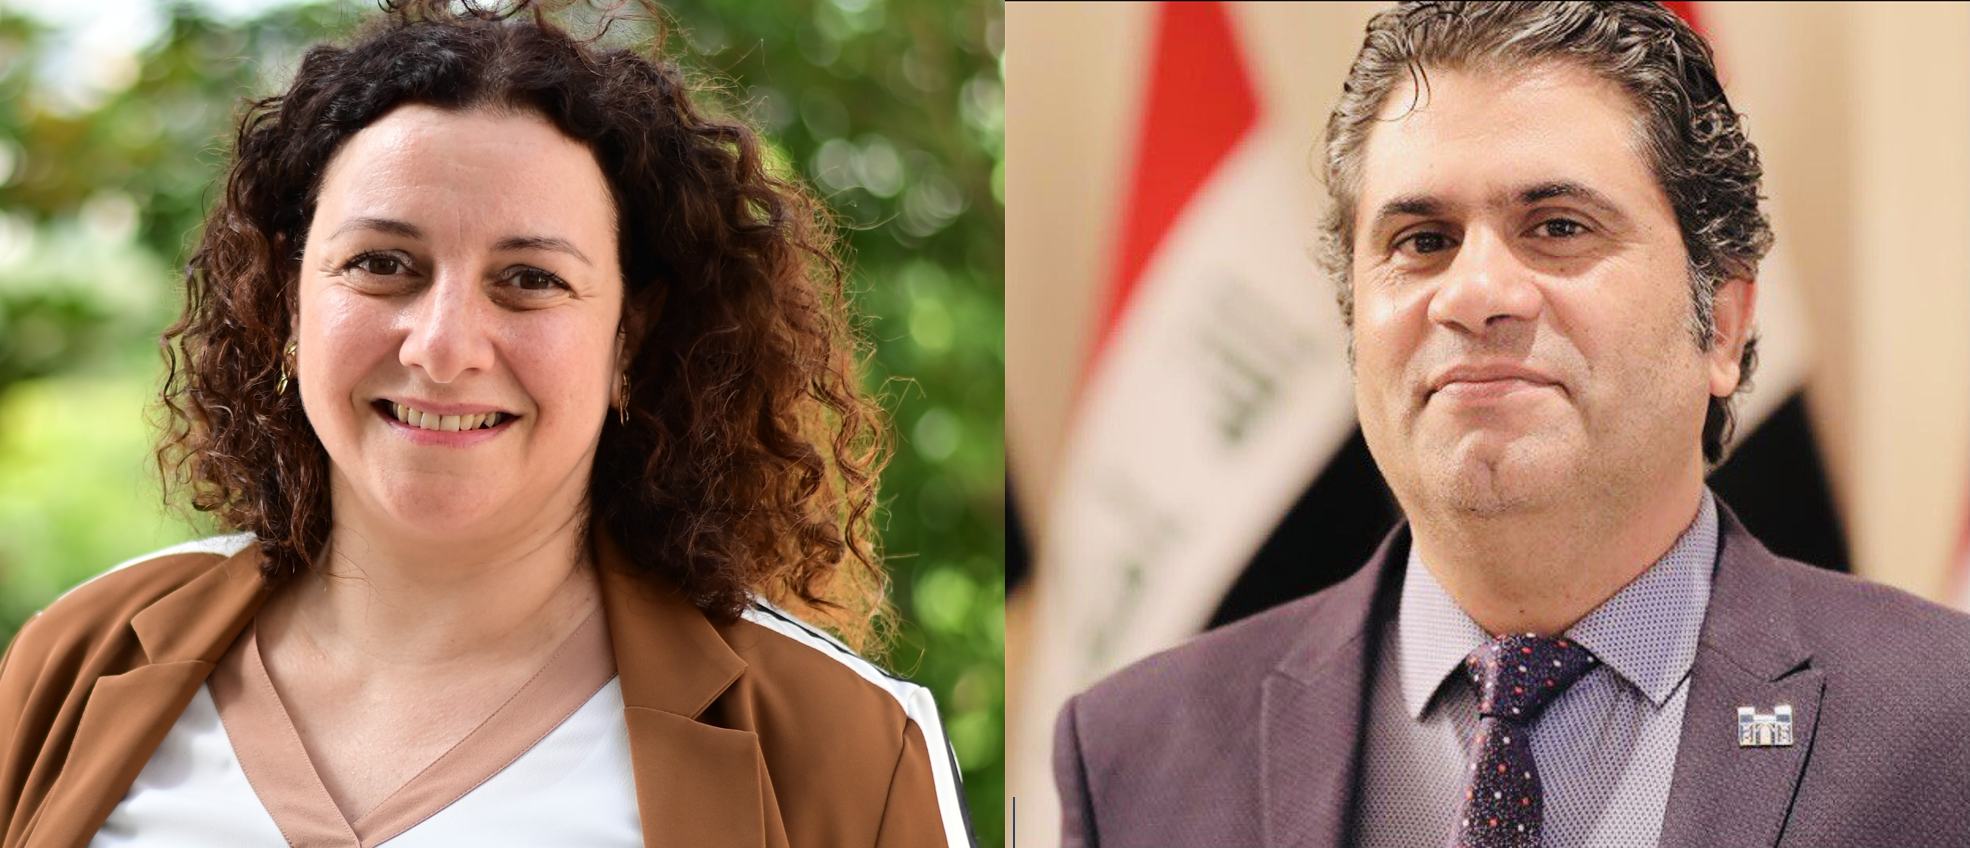 جائزة ابن رشد للفكر الحر لعام 2022 تمنح لكل من البرفيسورة نايلا طبارة من لبنان والدكتور سعد سلوم من العراق.